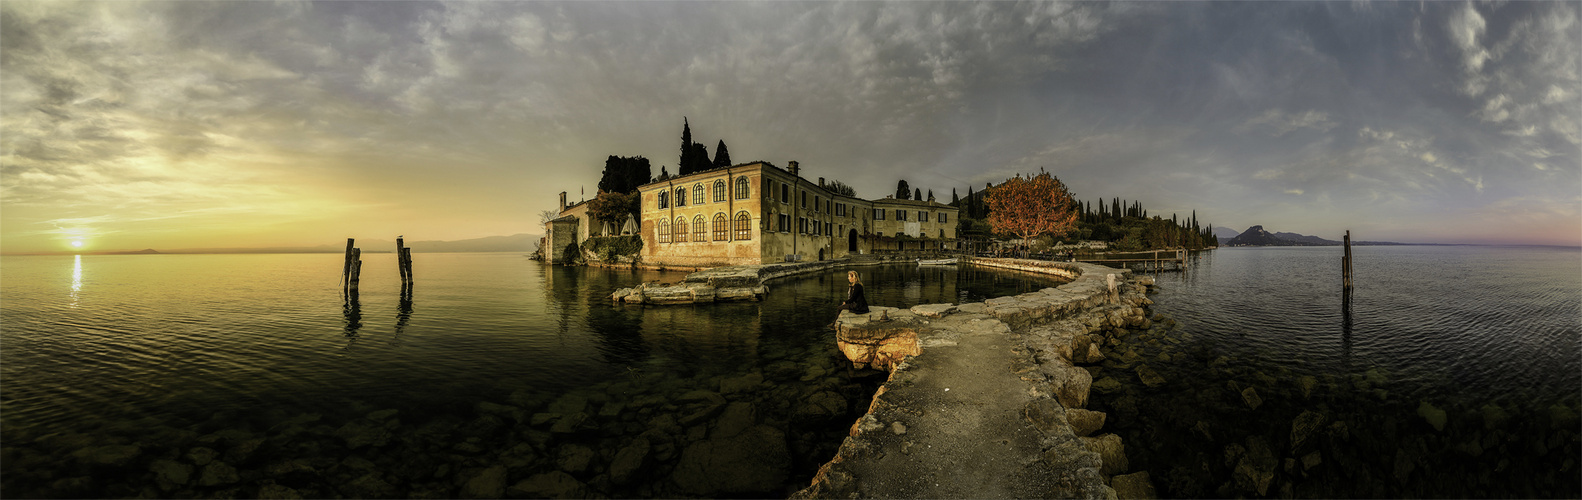 Panorama aus 10 Einzelbildern hochkant,   Erinnerungen an den Gardasee